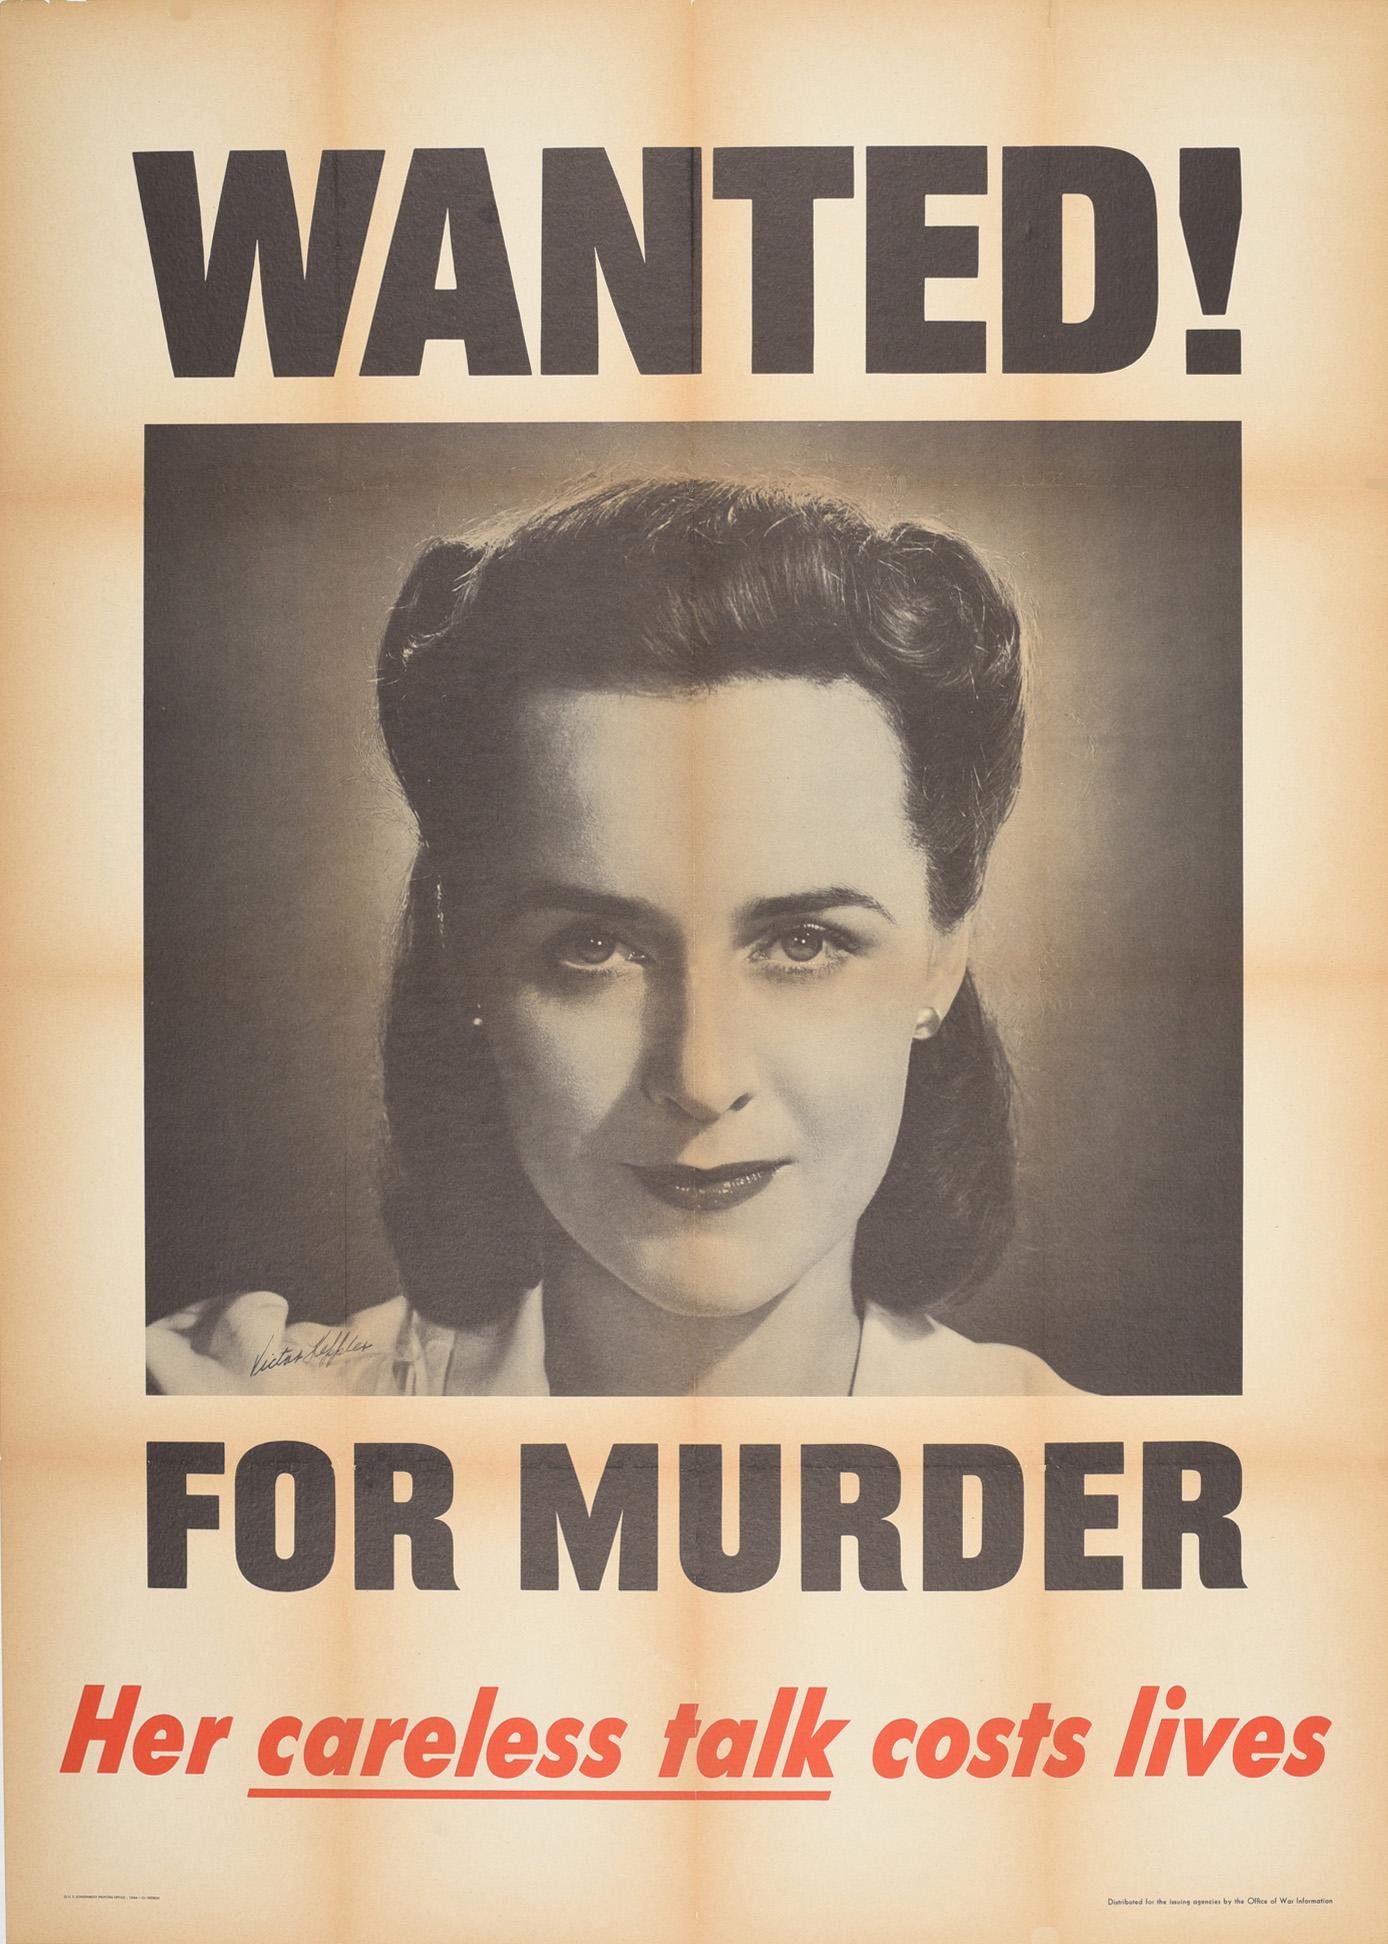 Victor Keppler Print - Original Vintage WWII Poster Wanted For Murder Careless Talk Costs Lives Warning